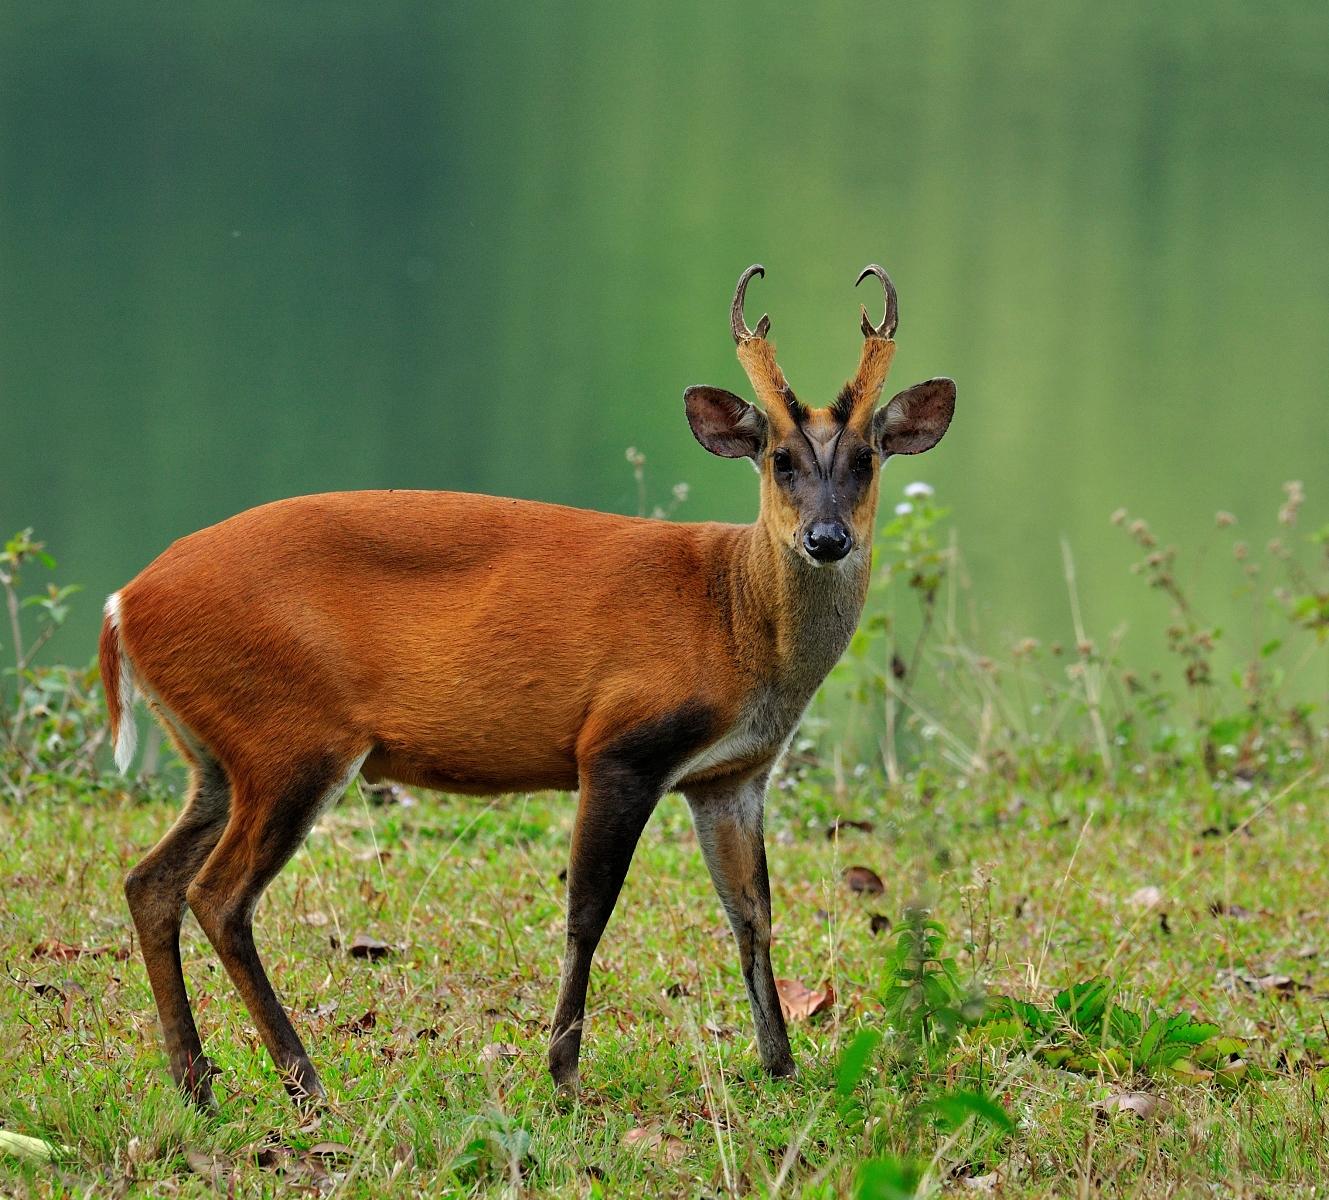 Barking Deer - KHAO SOK National Park, Thailand